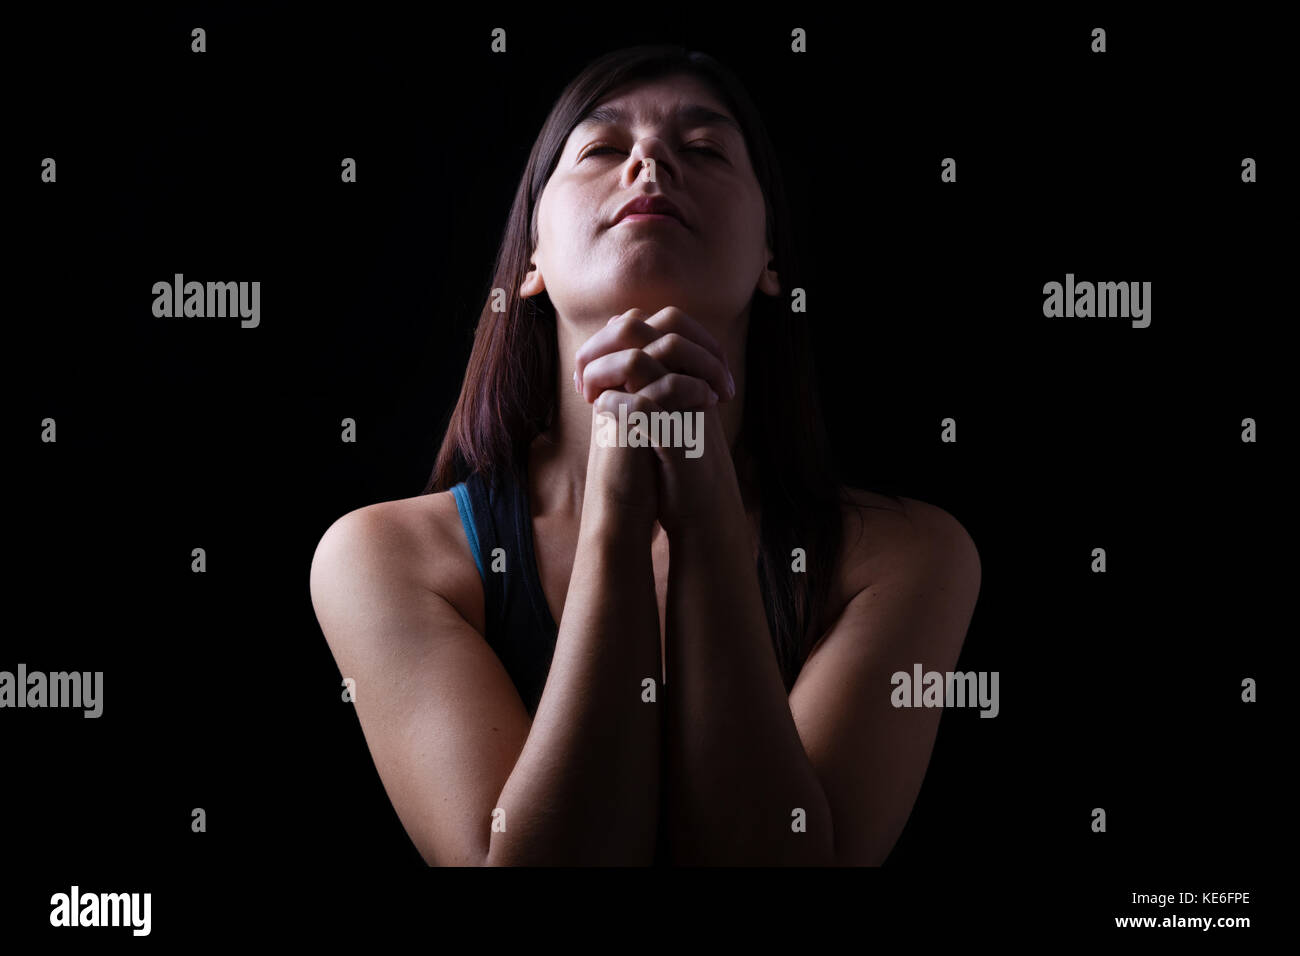 Gros plan d'une femme fidèle prier, mains jointes en prière, la tête et les yeux fermés dans l'inspiration religieuse, sur un fond noir. la prière espère que prier Banque D'Images